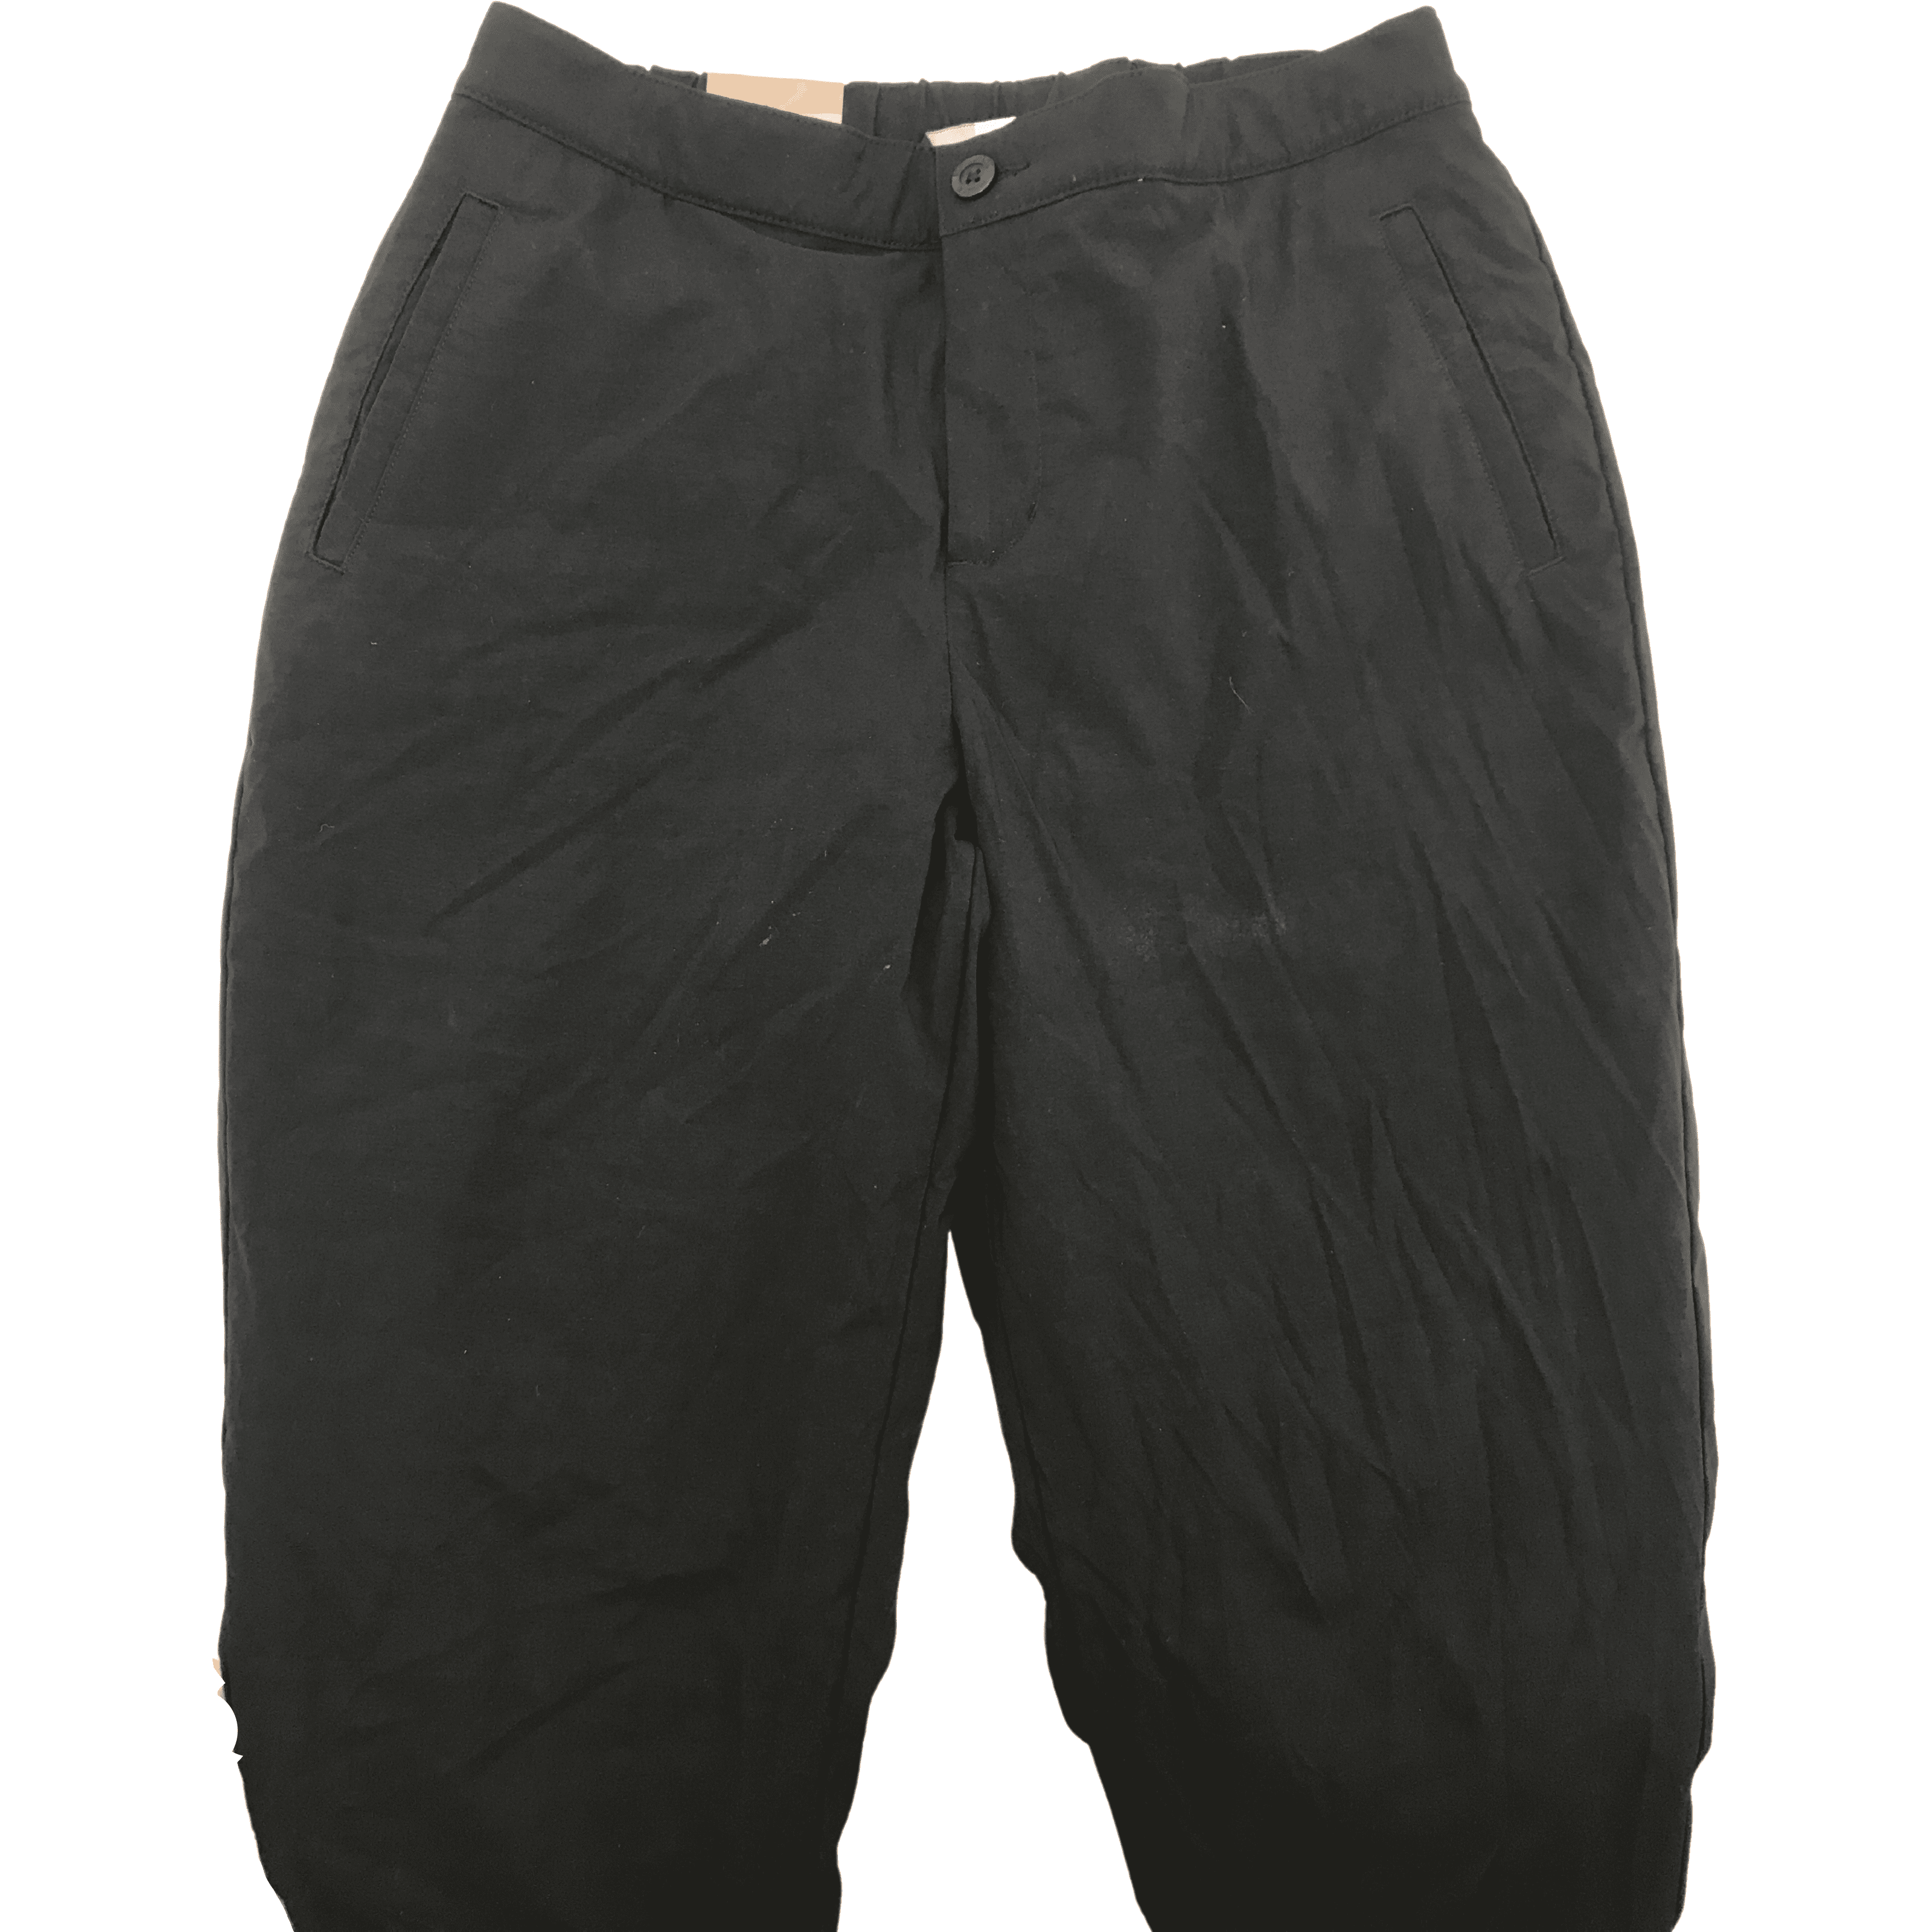 Stormpack Sunice Women's Windproof Lined Pants